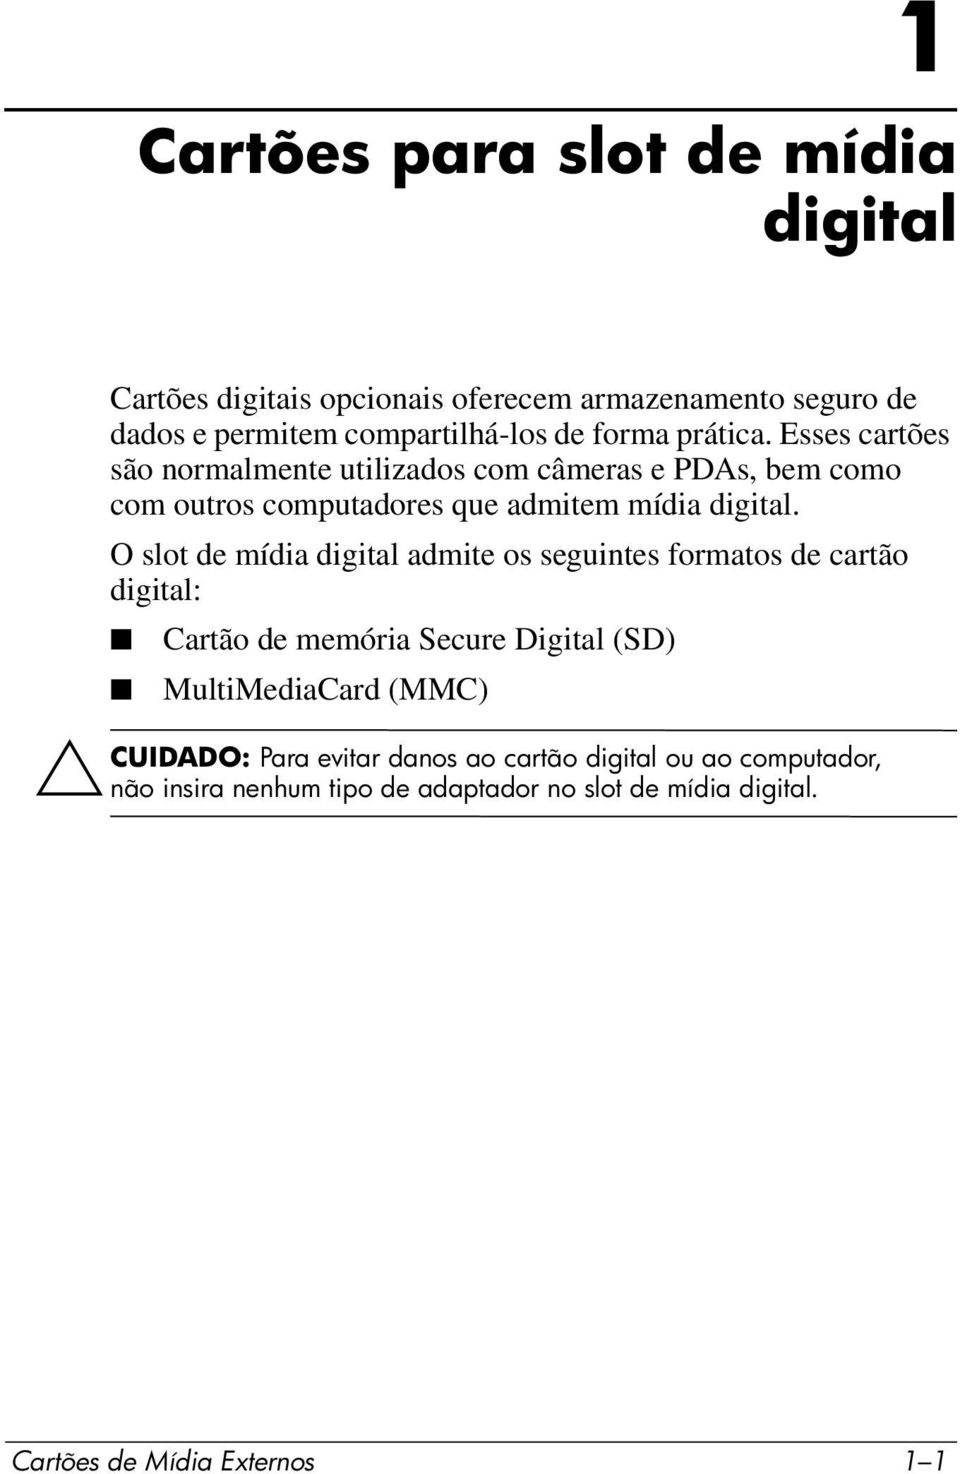 O slot de mídia digital admite os seguintes formatos de cartão digital: Cartão de memória Secure Digital (SD) MultiMediaCard (MMC)